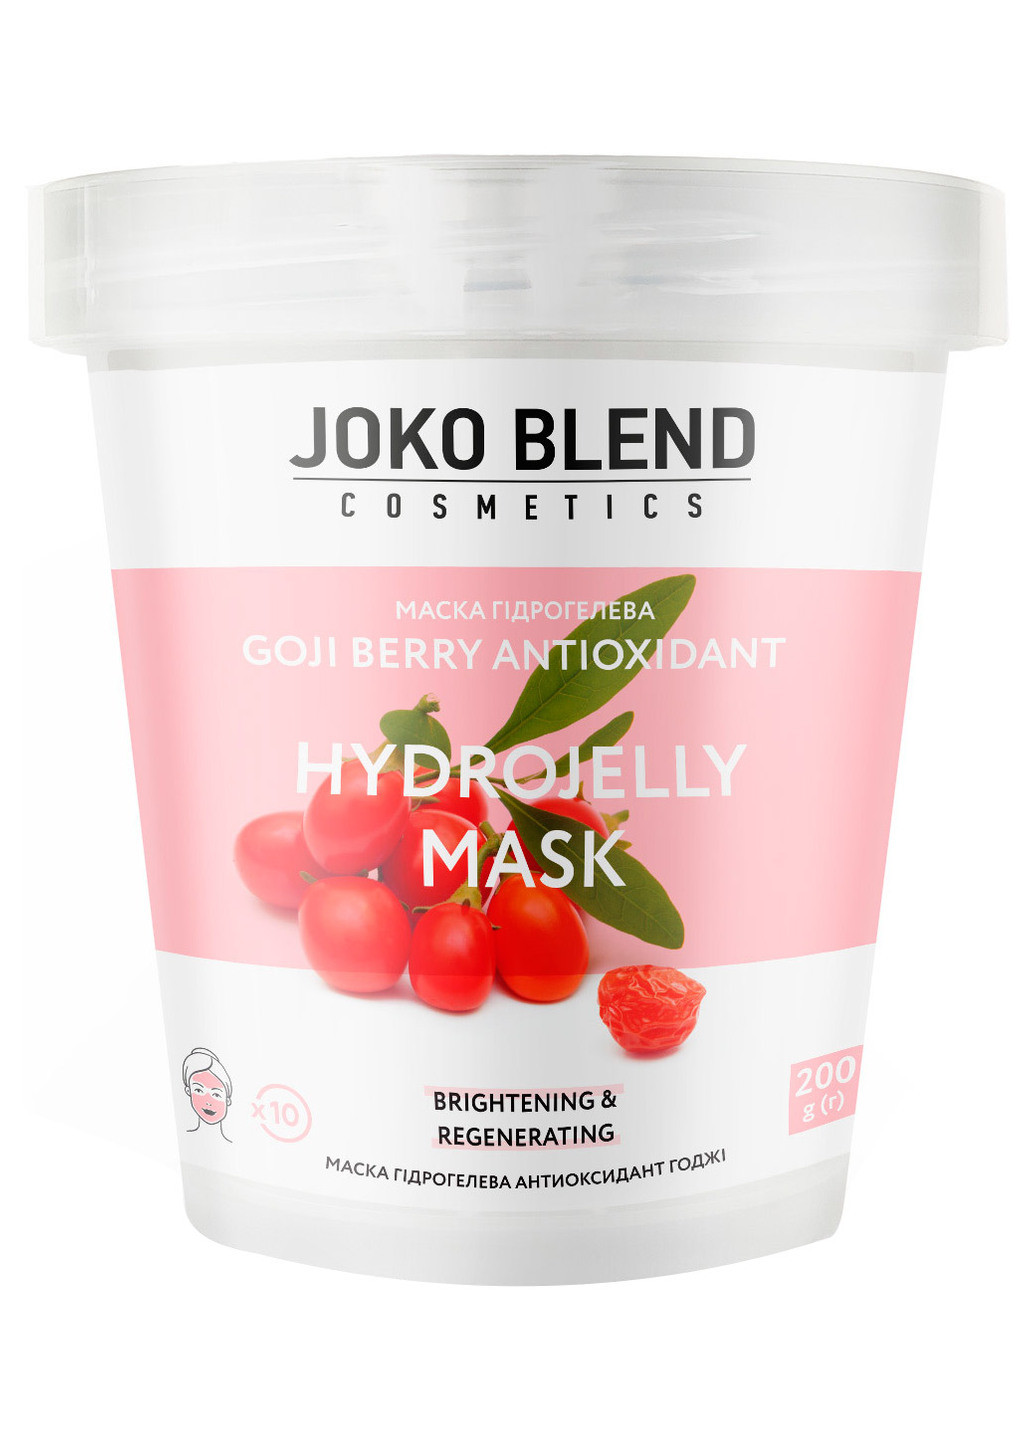 Маска гидрогелевая для лица Goji Berry Antioxidan Hydrojelly Mask, 200 г Joko Blend (202415115)